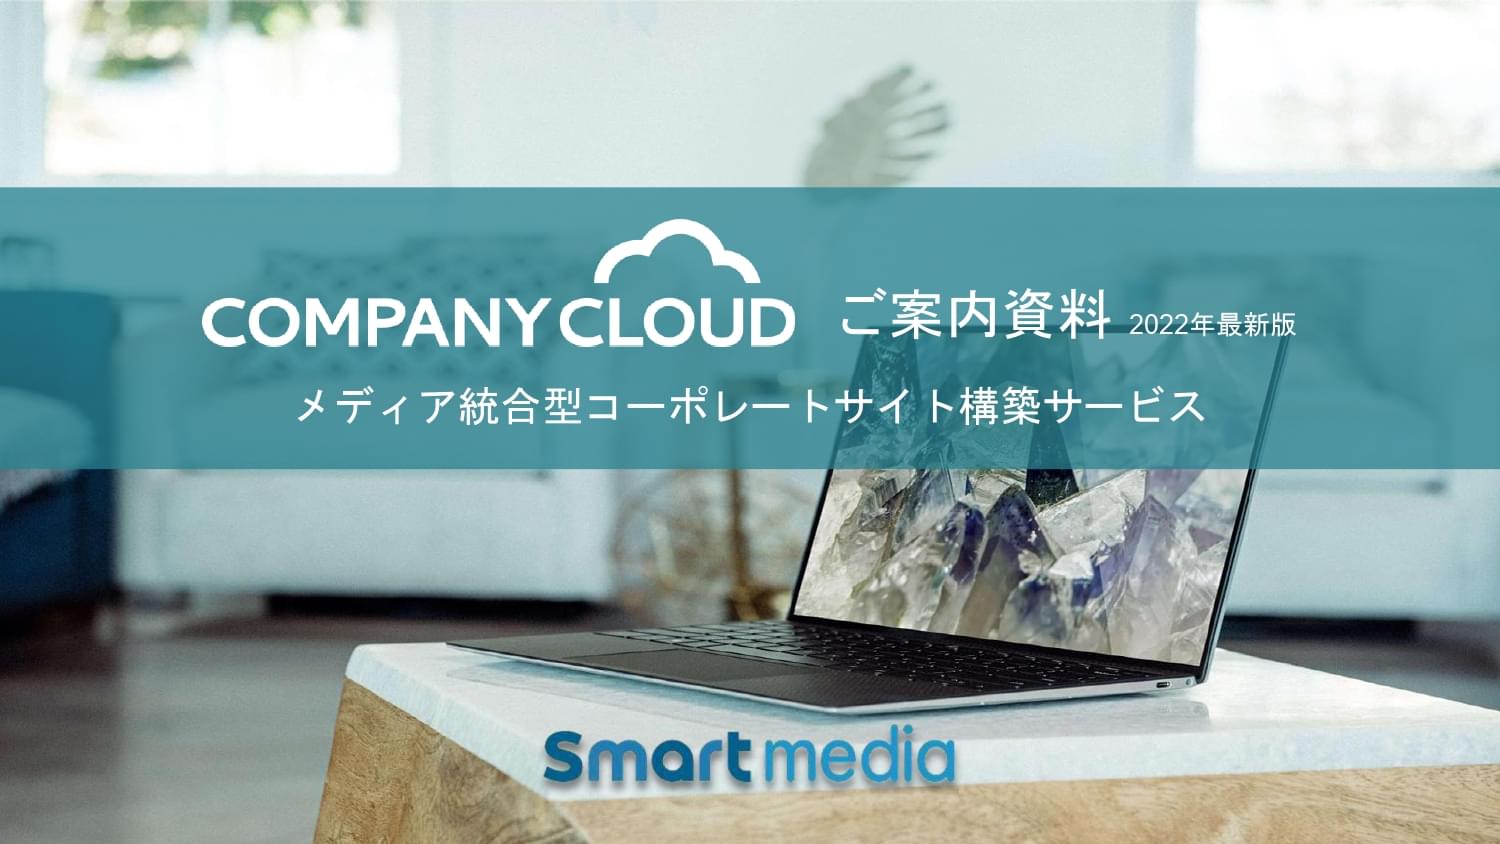 Company Cloud